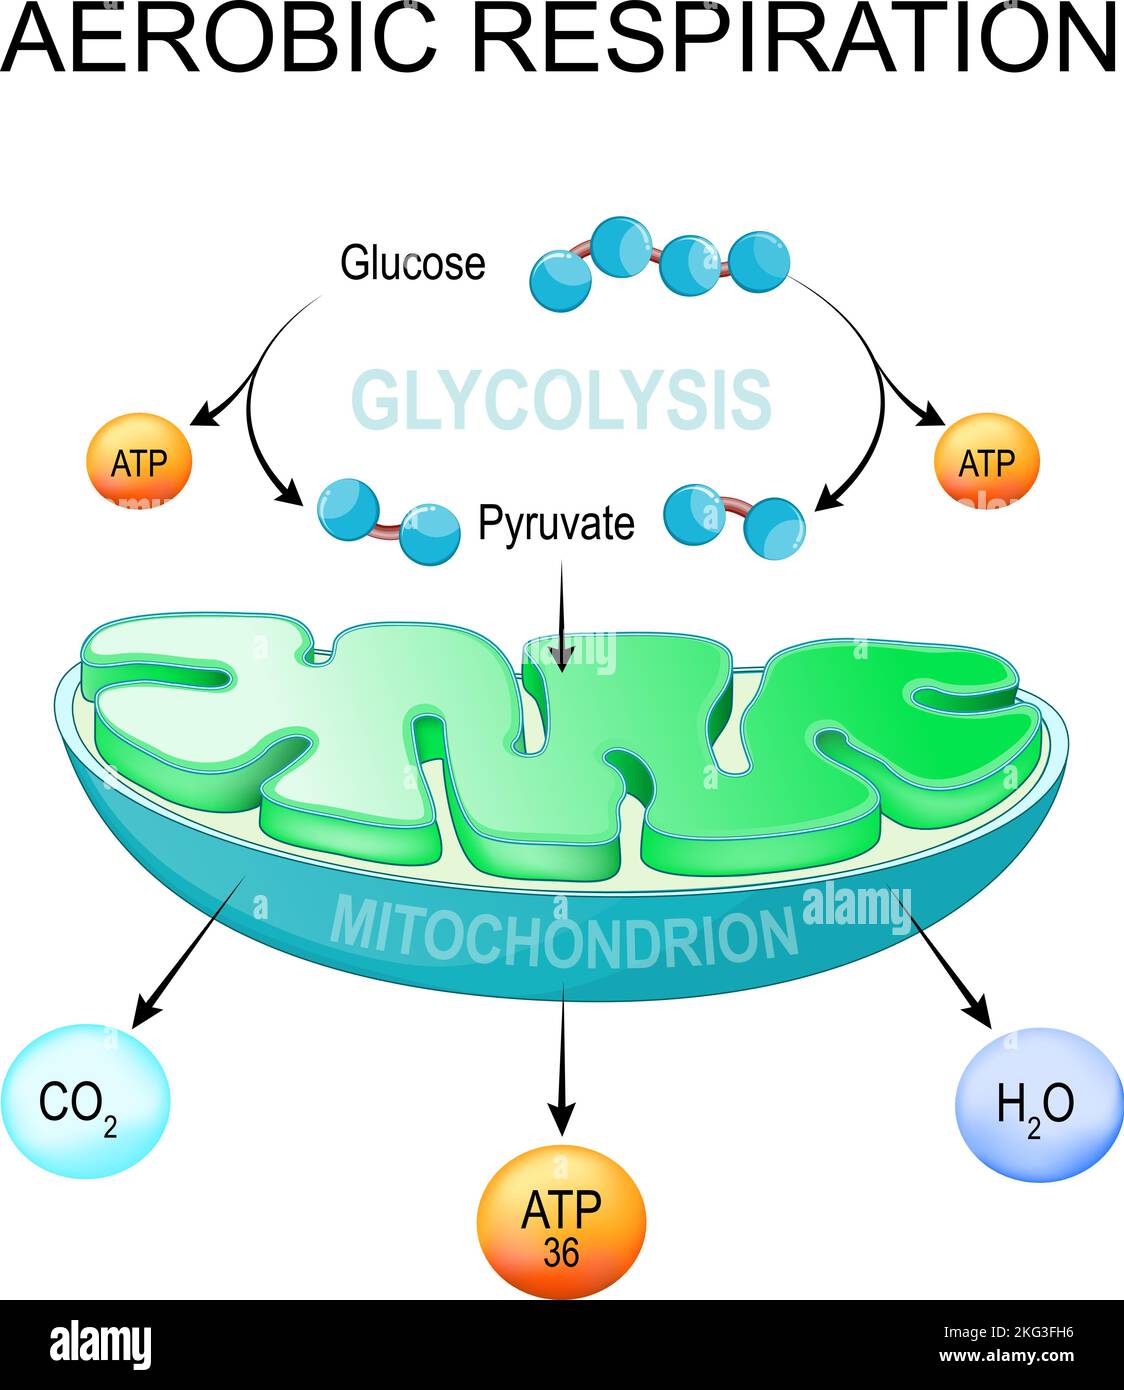 respiration aérobie. Glycolyse et synthèse de l'ATP dans les mitochondries. Conversion du glucose en pyruvate dans les cellules. Voie métabolique. Poster vectoriel Illustration de Vecteur